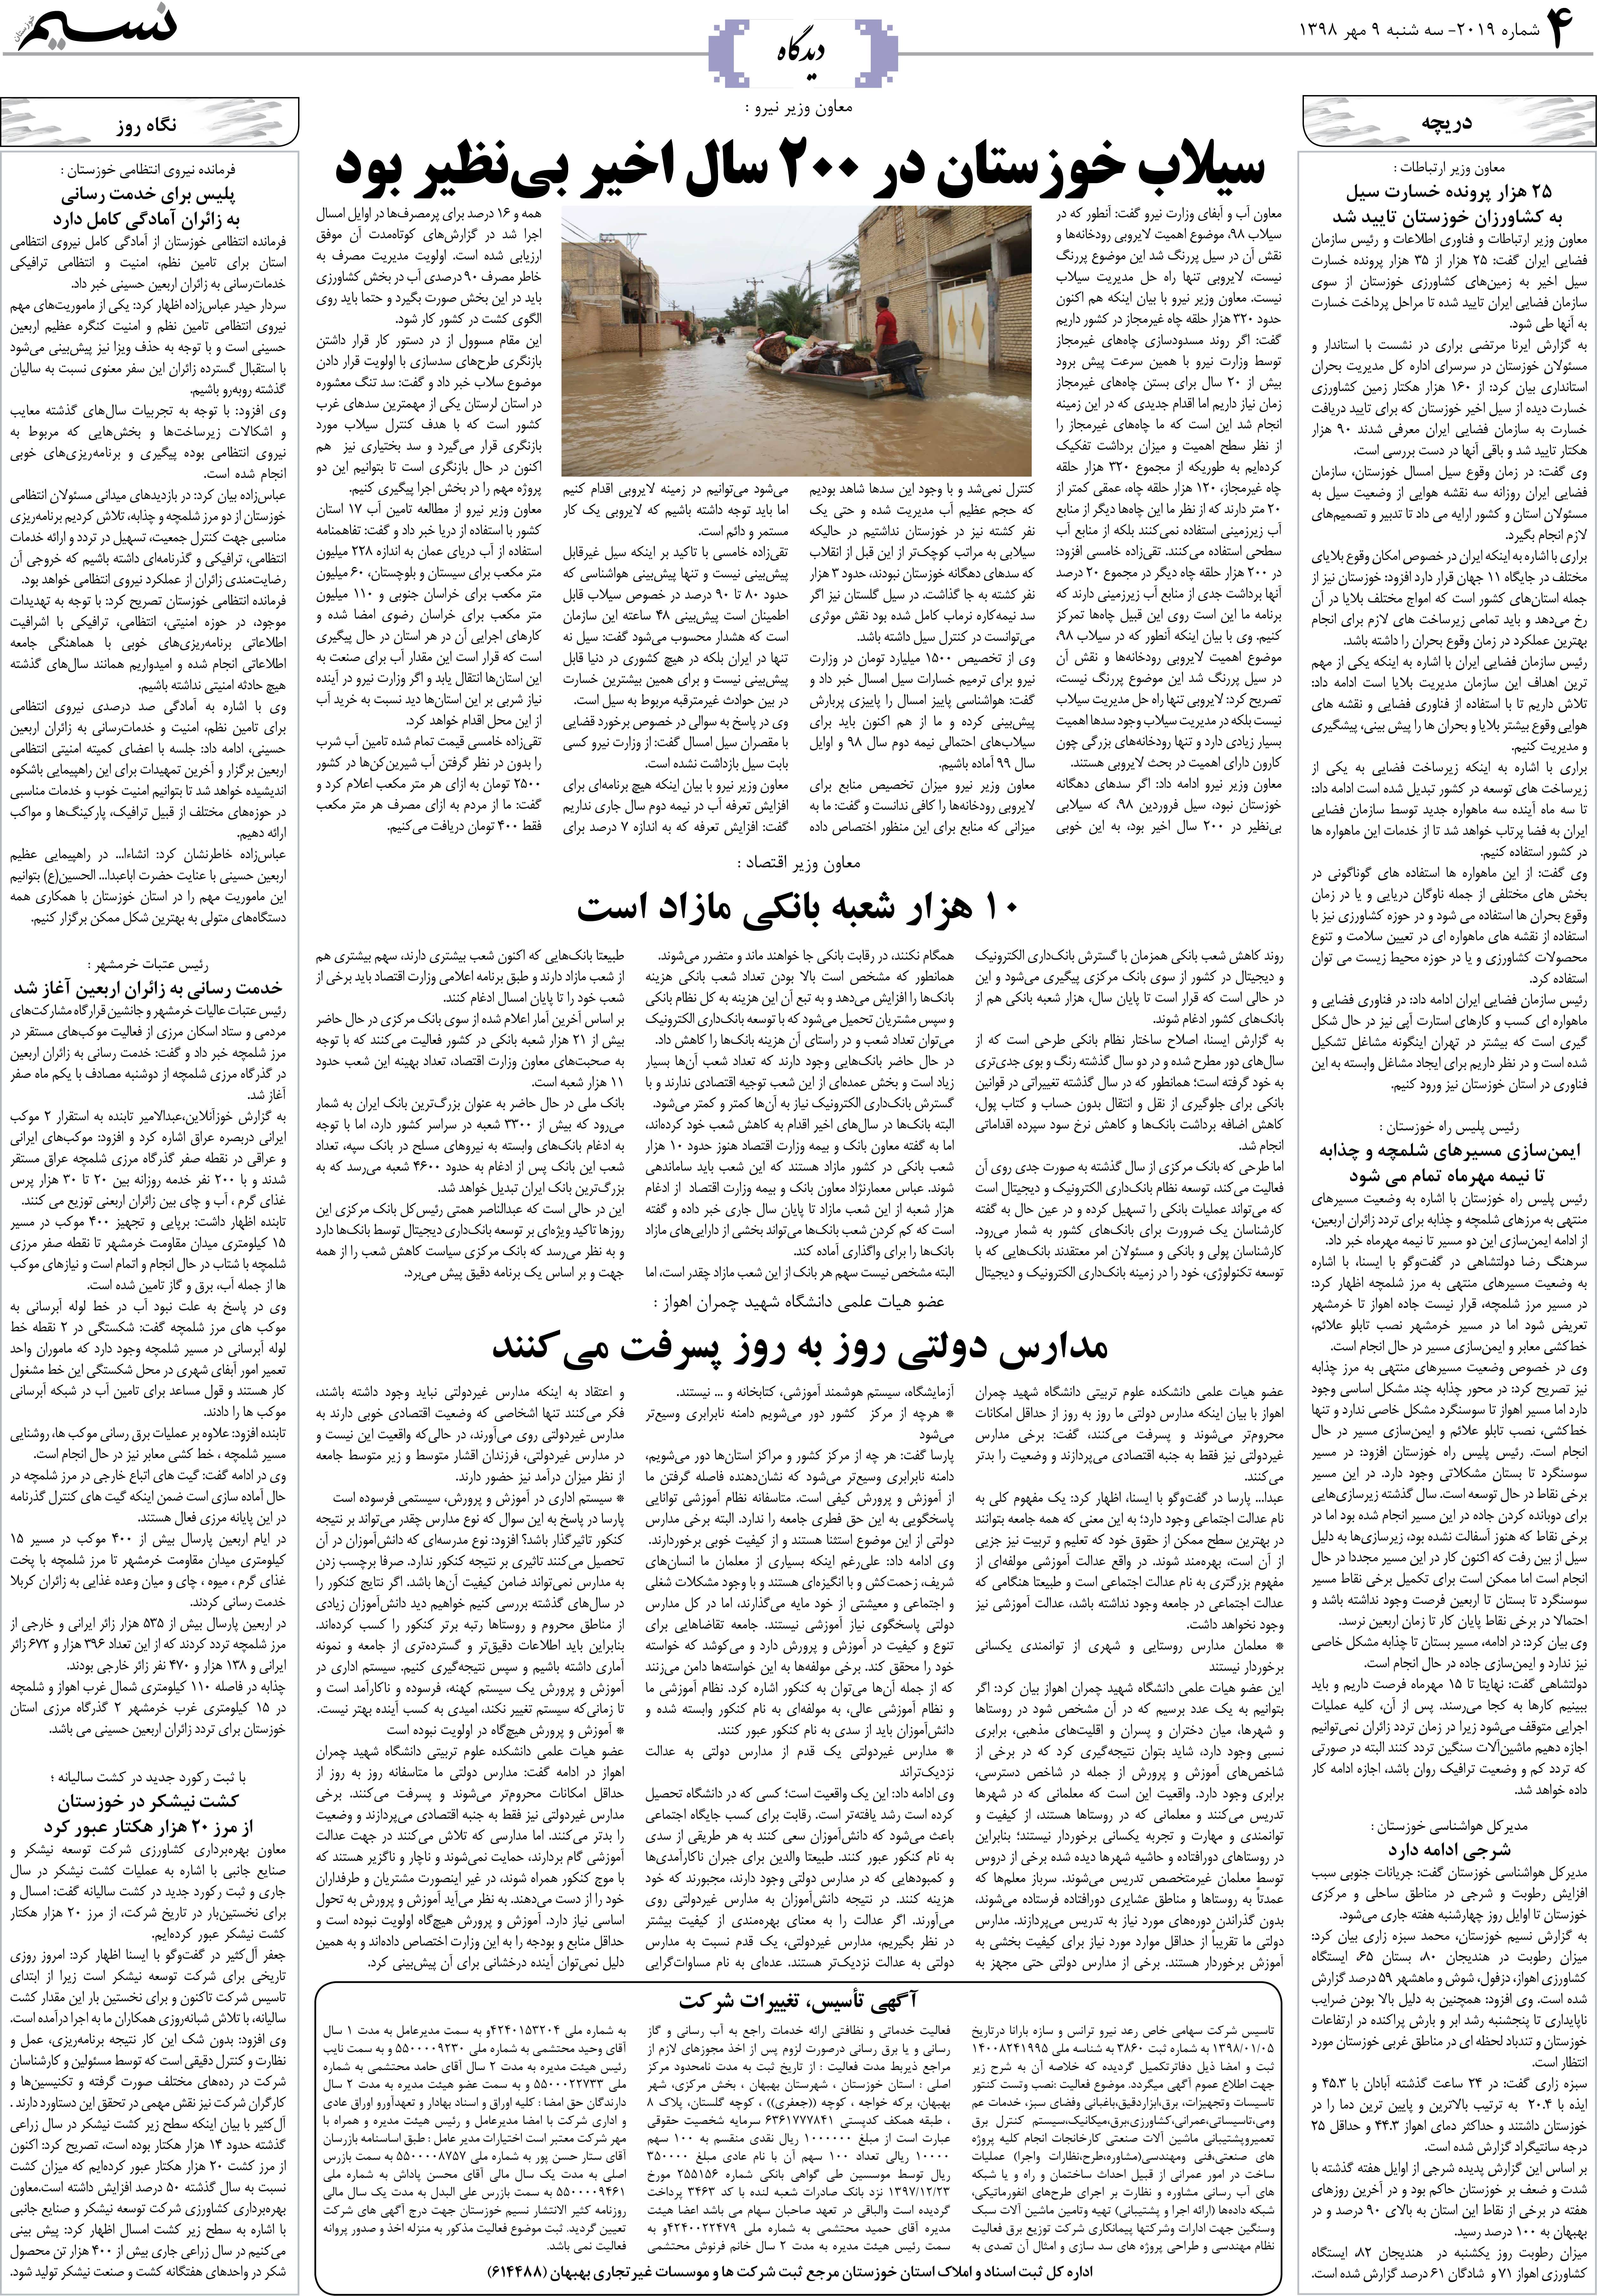 صفحه دیدگاه روزنامه نسیم شماره 2019